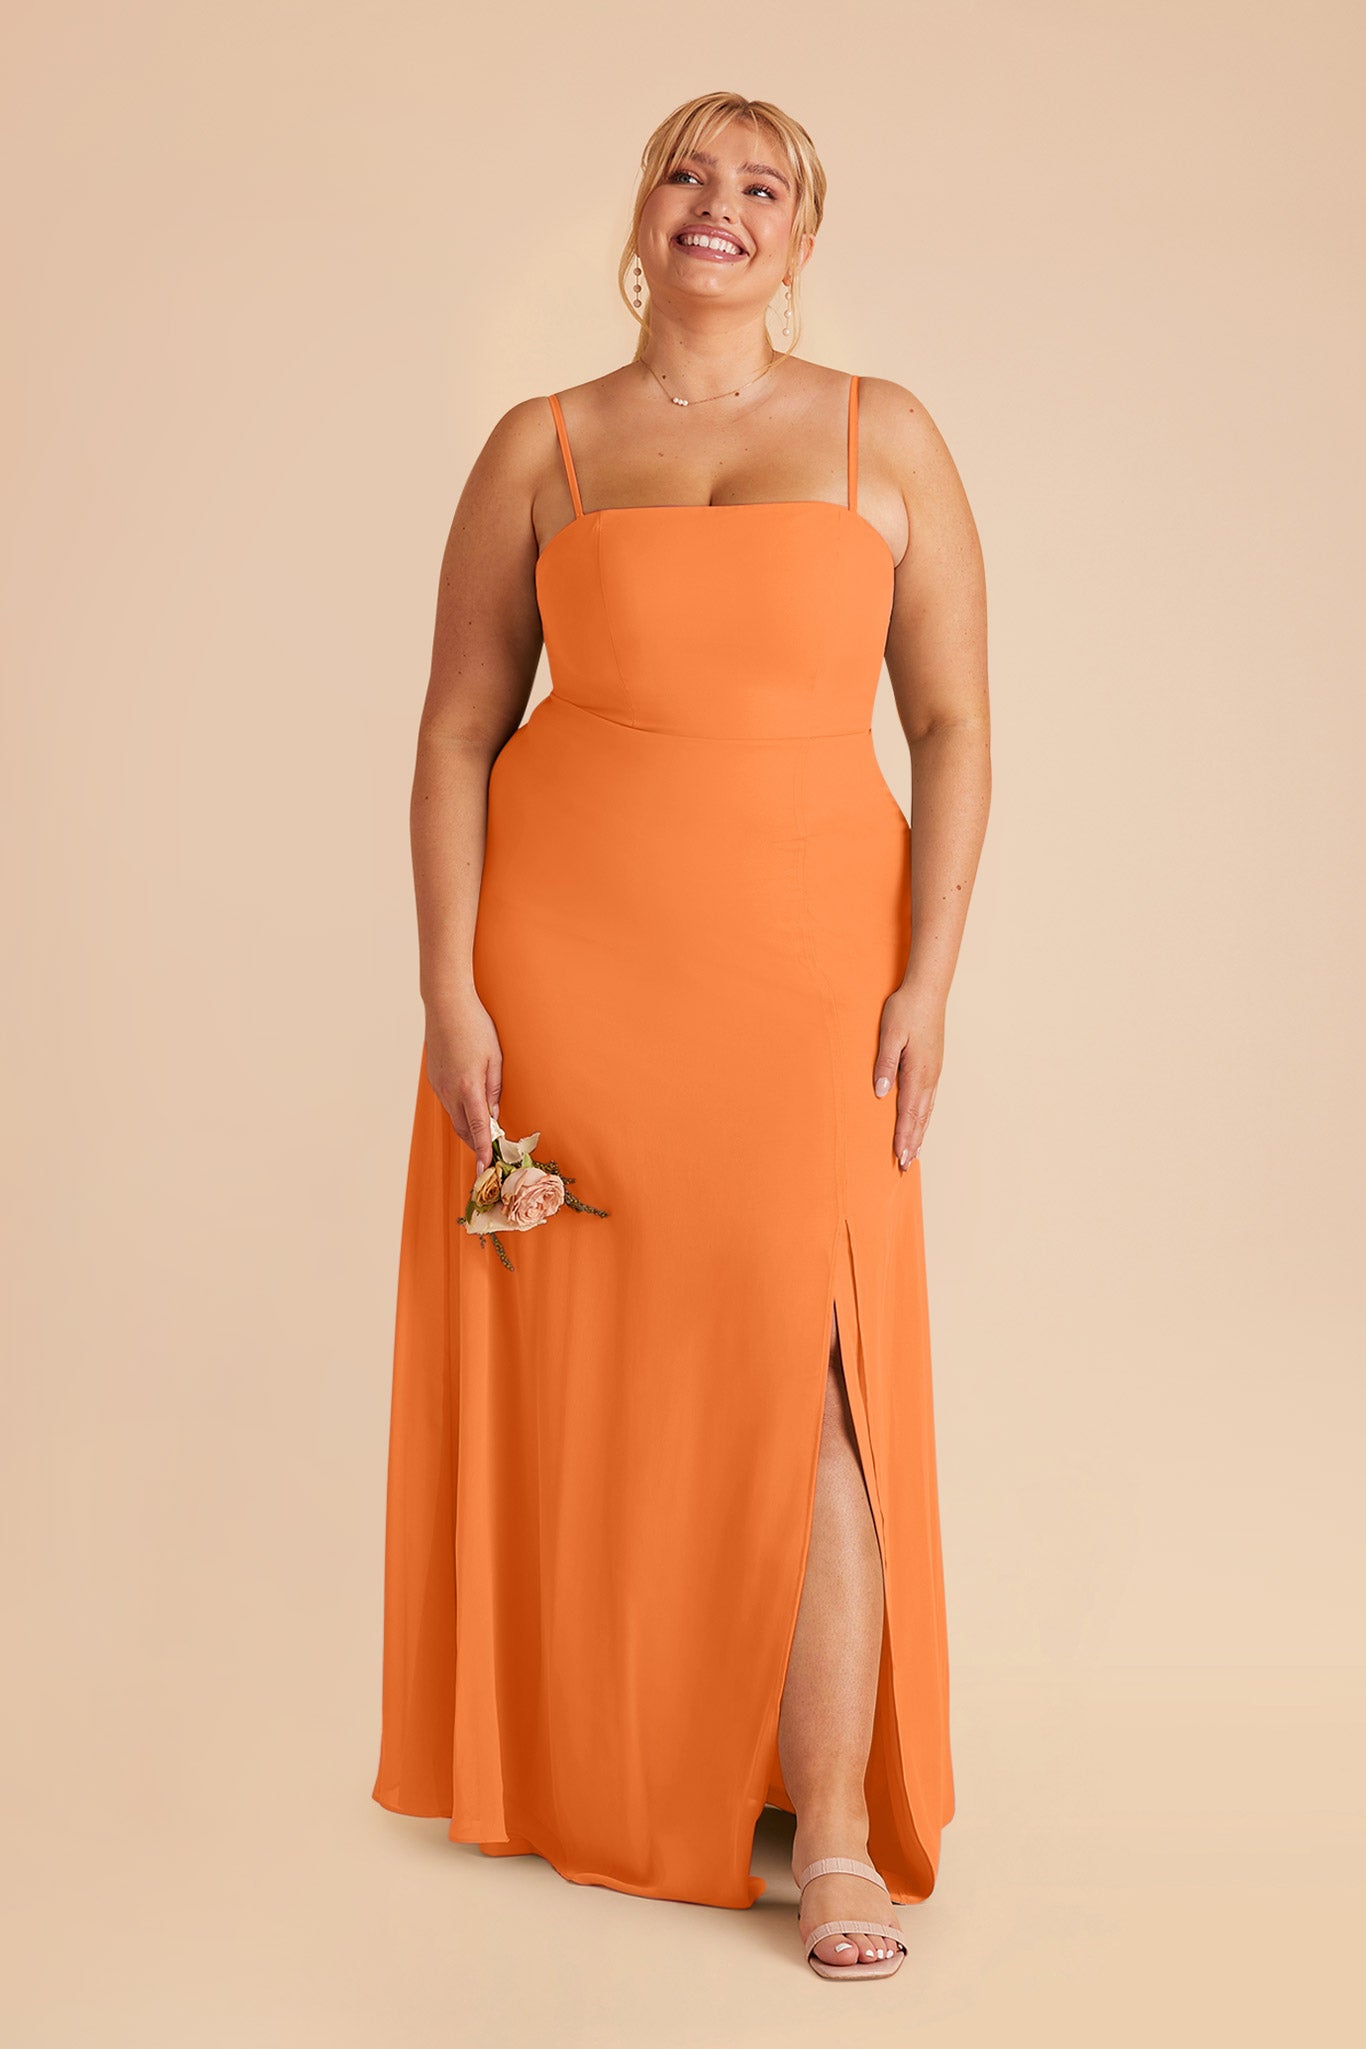 Apricot Chris Convertible Chiffon Dress by Birdy Grey